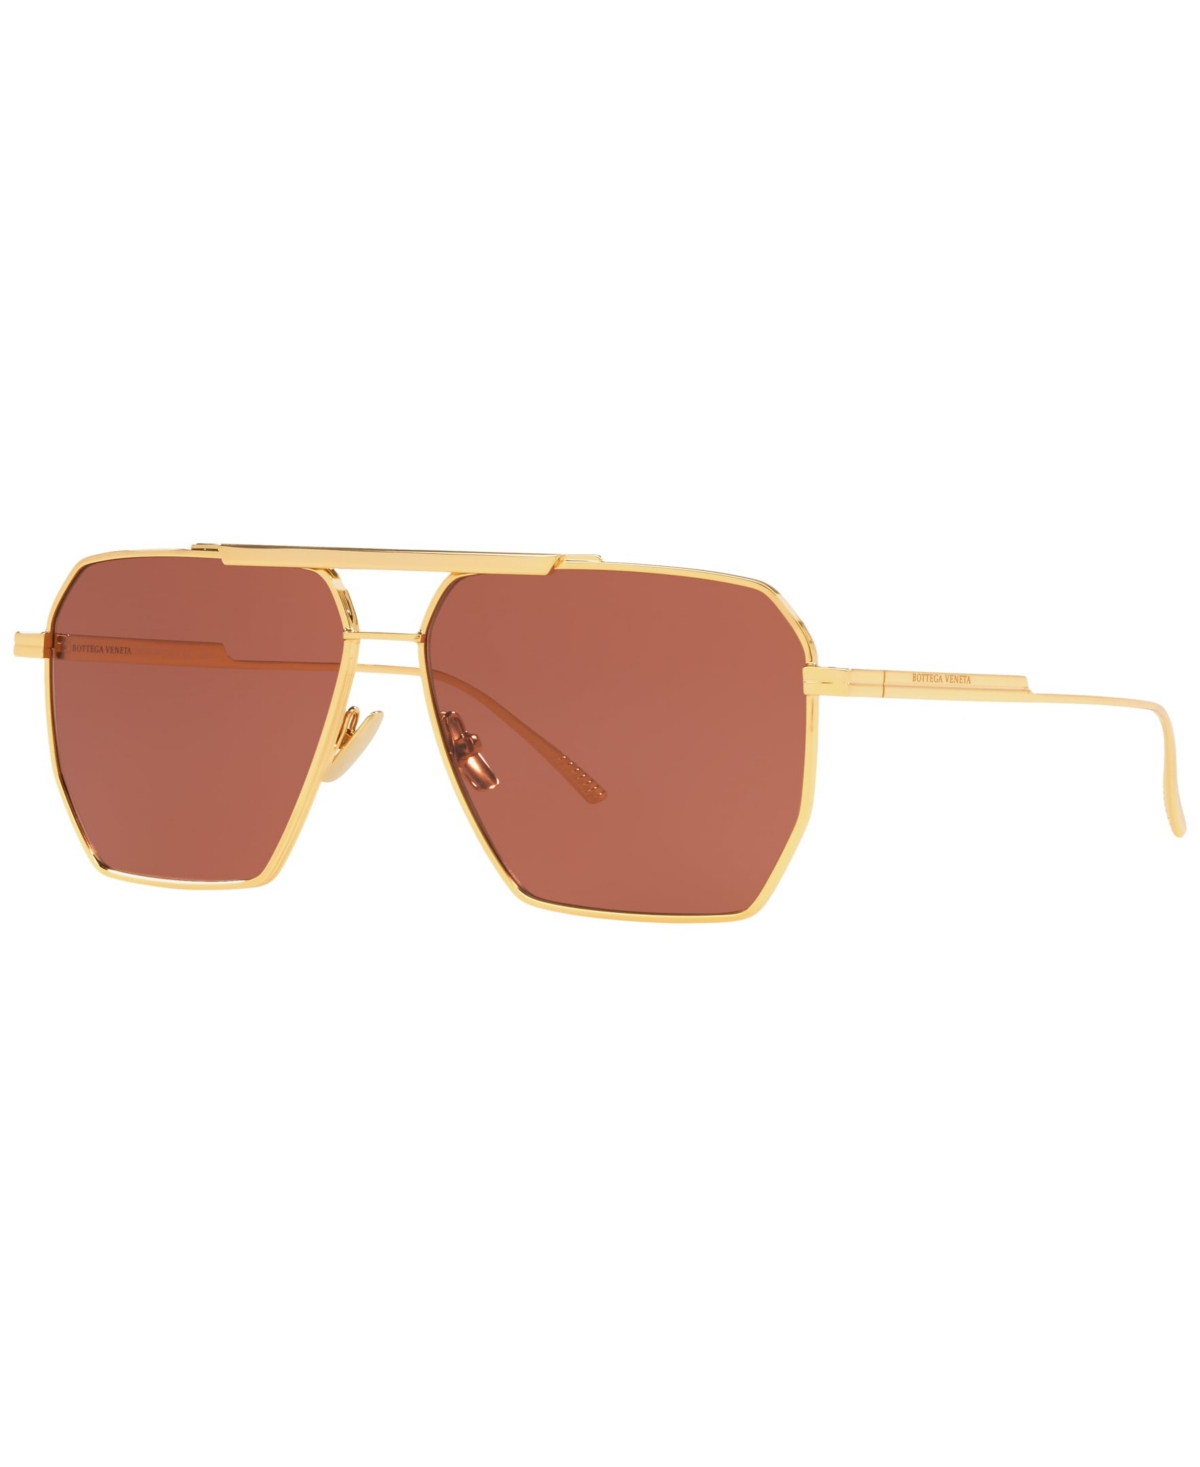 Bottega Veneta Men's Sunglasses, BV1012S - Gold